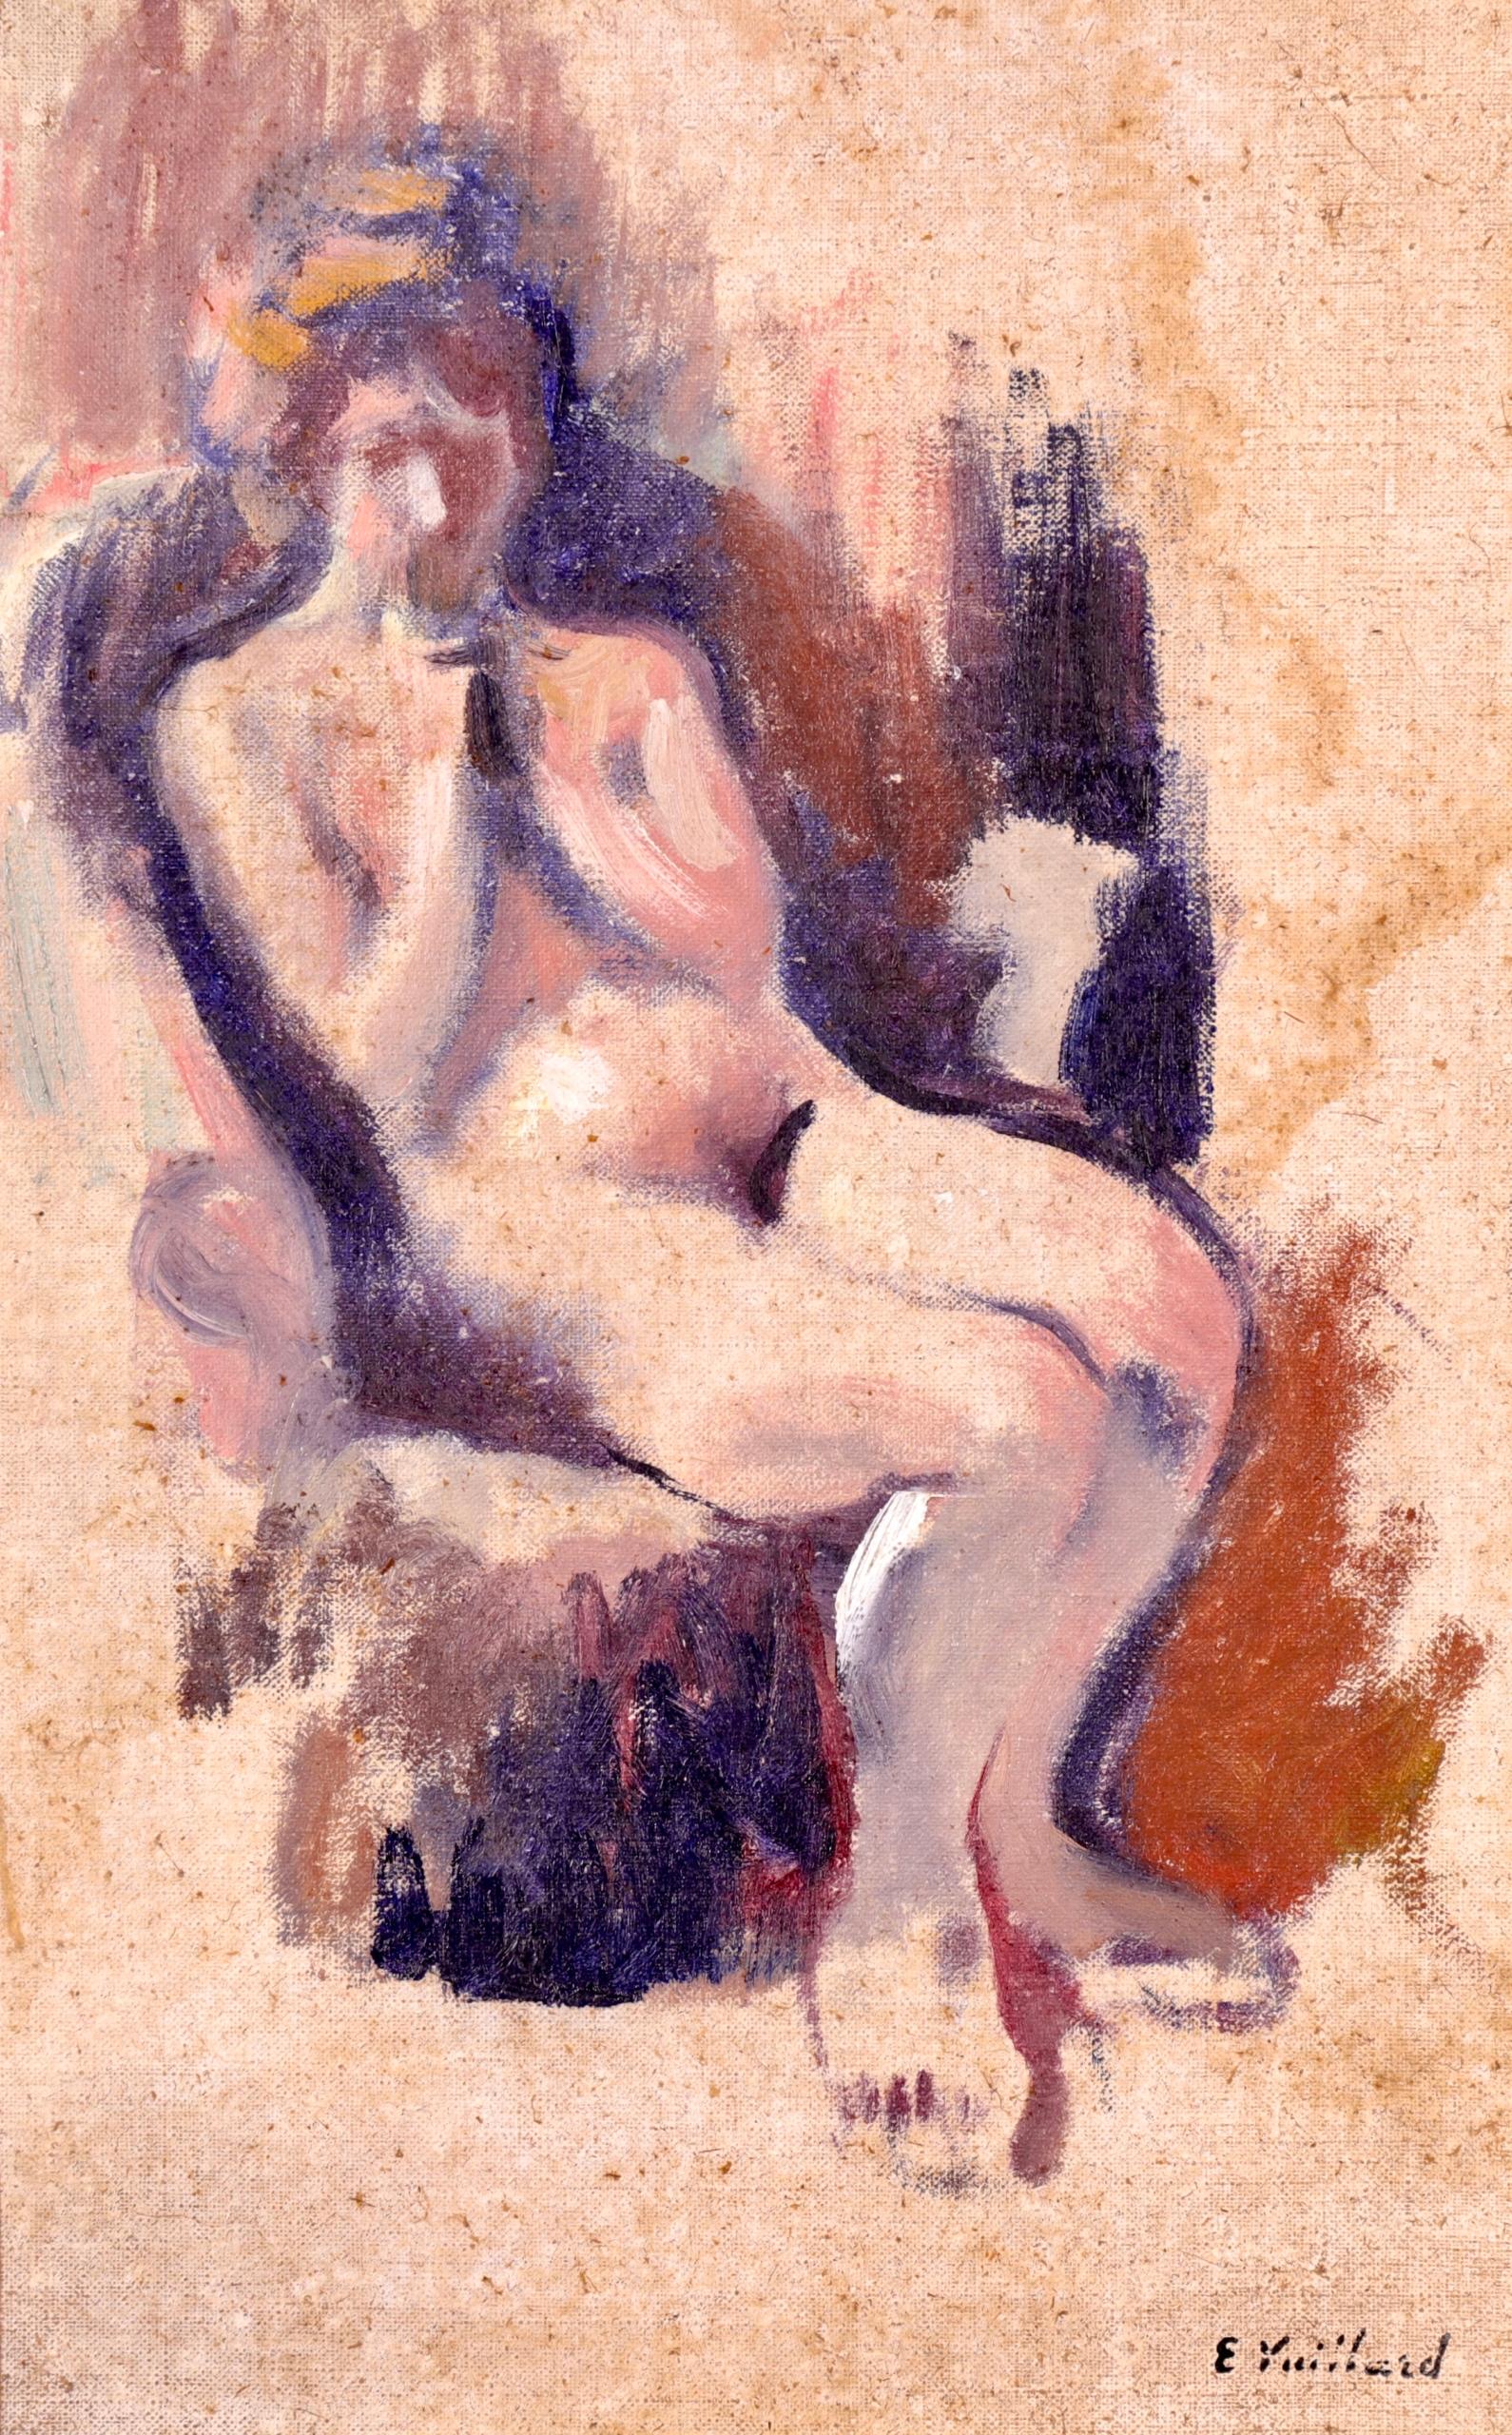 Une belle huile sur toile du peintre français Nabis Edouard Vuillard représentant une femme nue reposant sur une chaise dans un intérieur. Une pièce absolument stupéfiante. 

Signature de la marque : 
Signé en bas à droite 

Dimensions : 
Encadré :